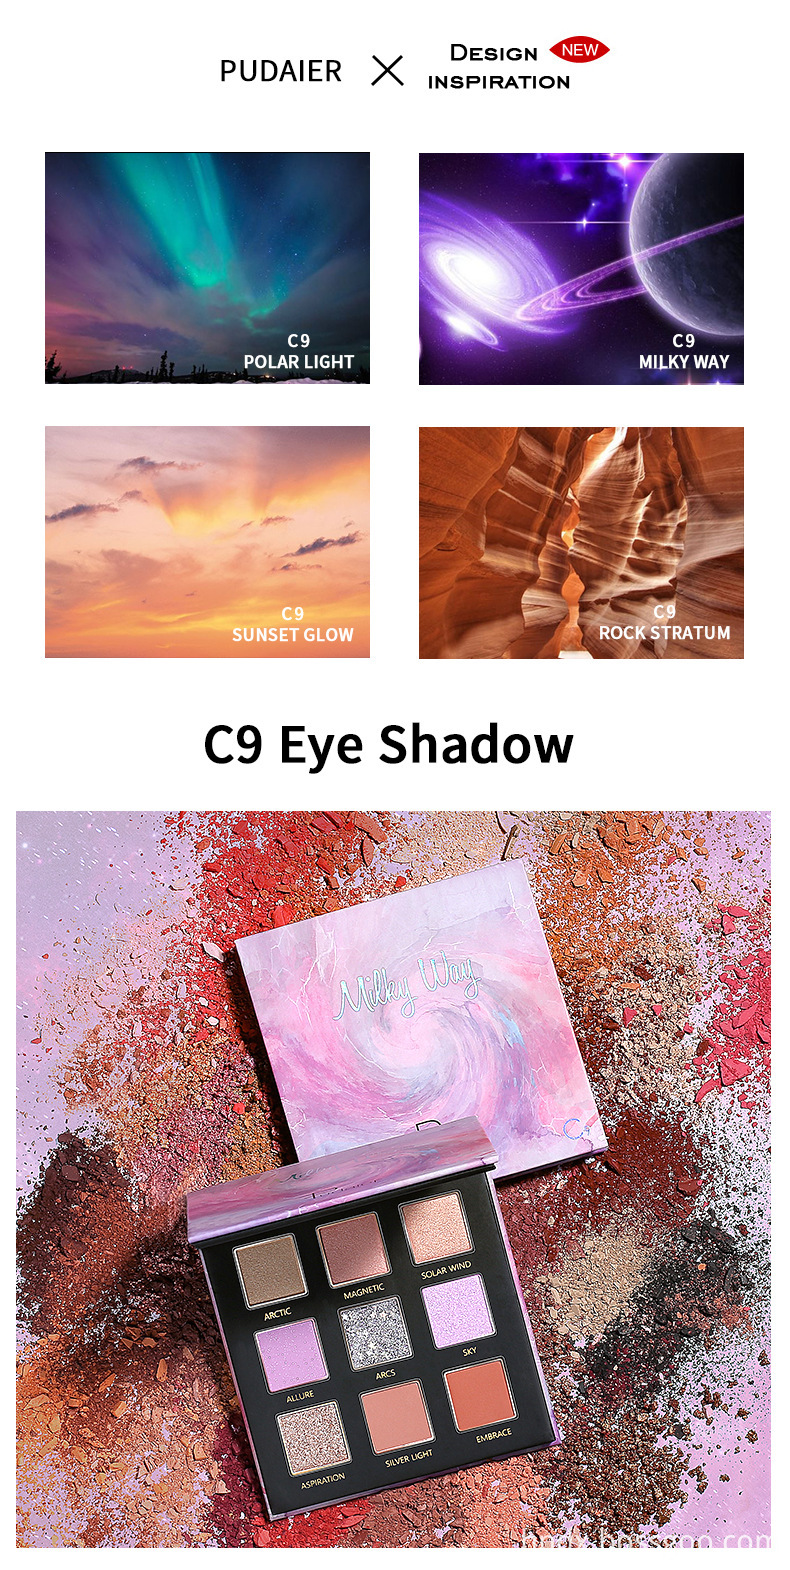 C9 Eye Shadow style 2